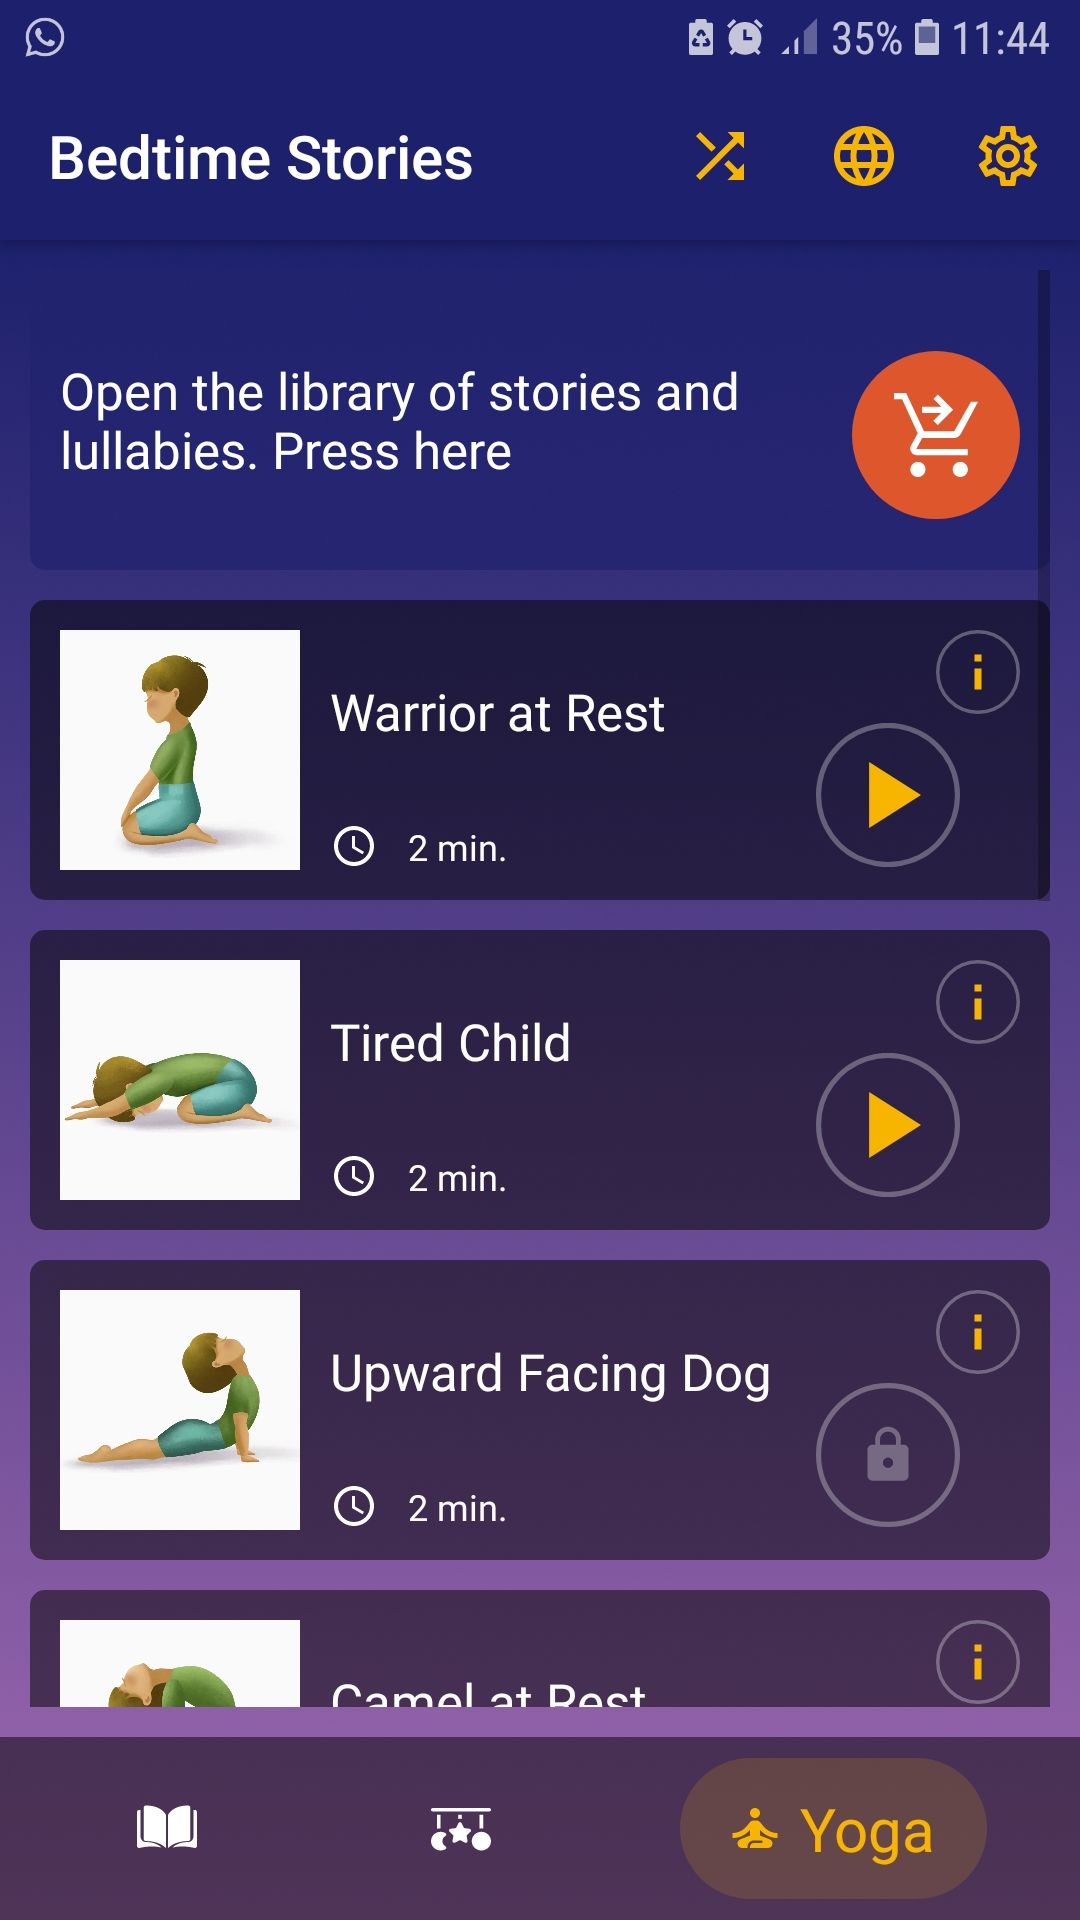 Bedtime Stories for Kids Sleep yoga sleep stories for kids children mobile app